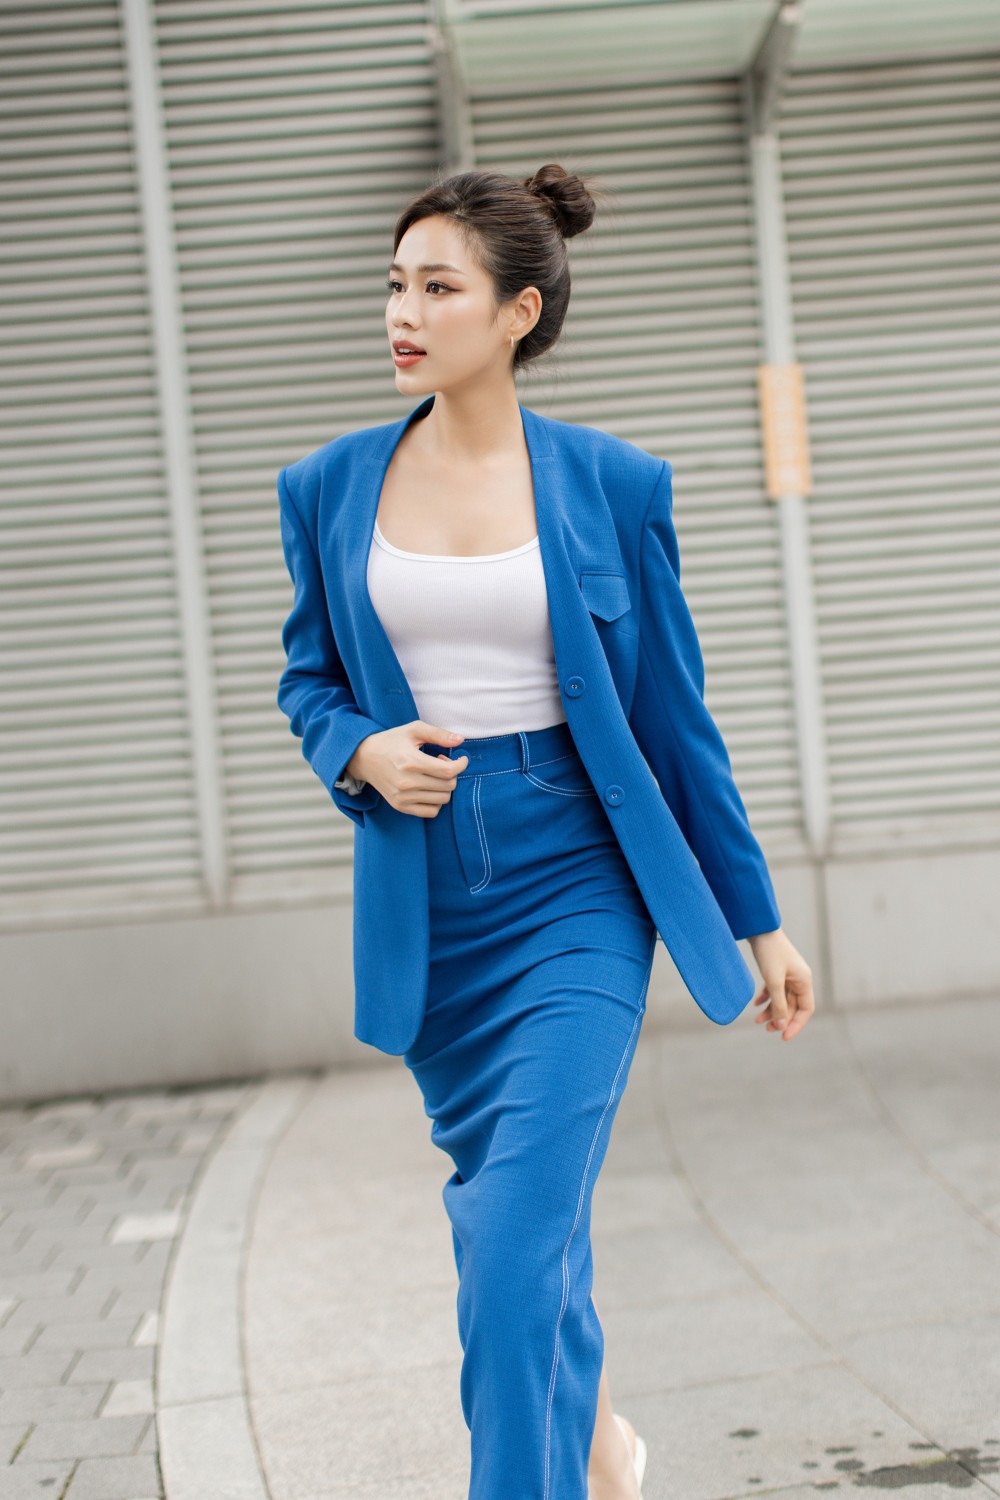 Hoa hậu Đỗ Thị Hà lên đồ đẹp chuẩn nữ CEO ở tuổi 22 - 4